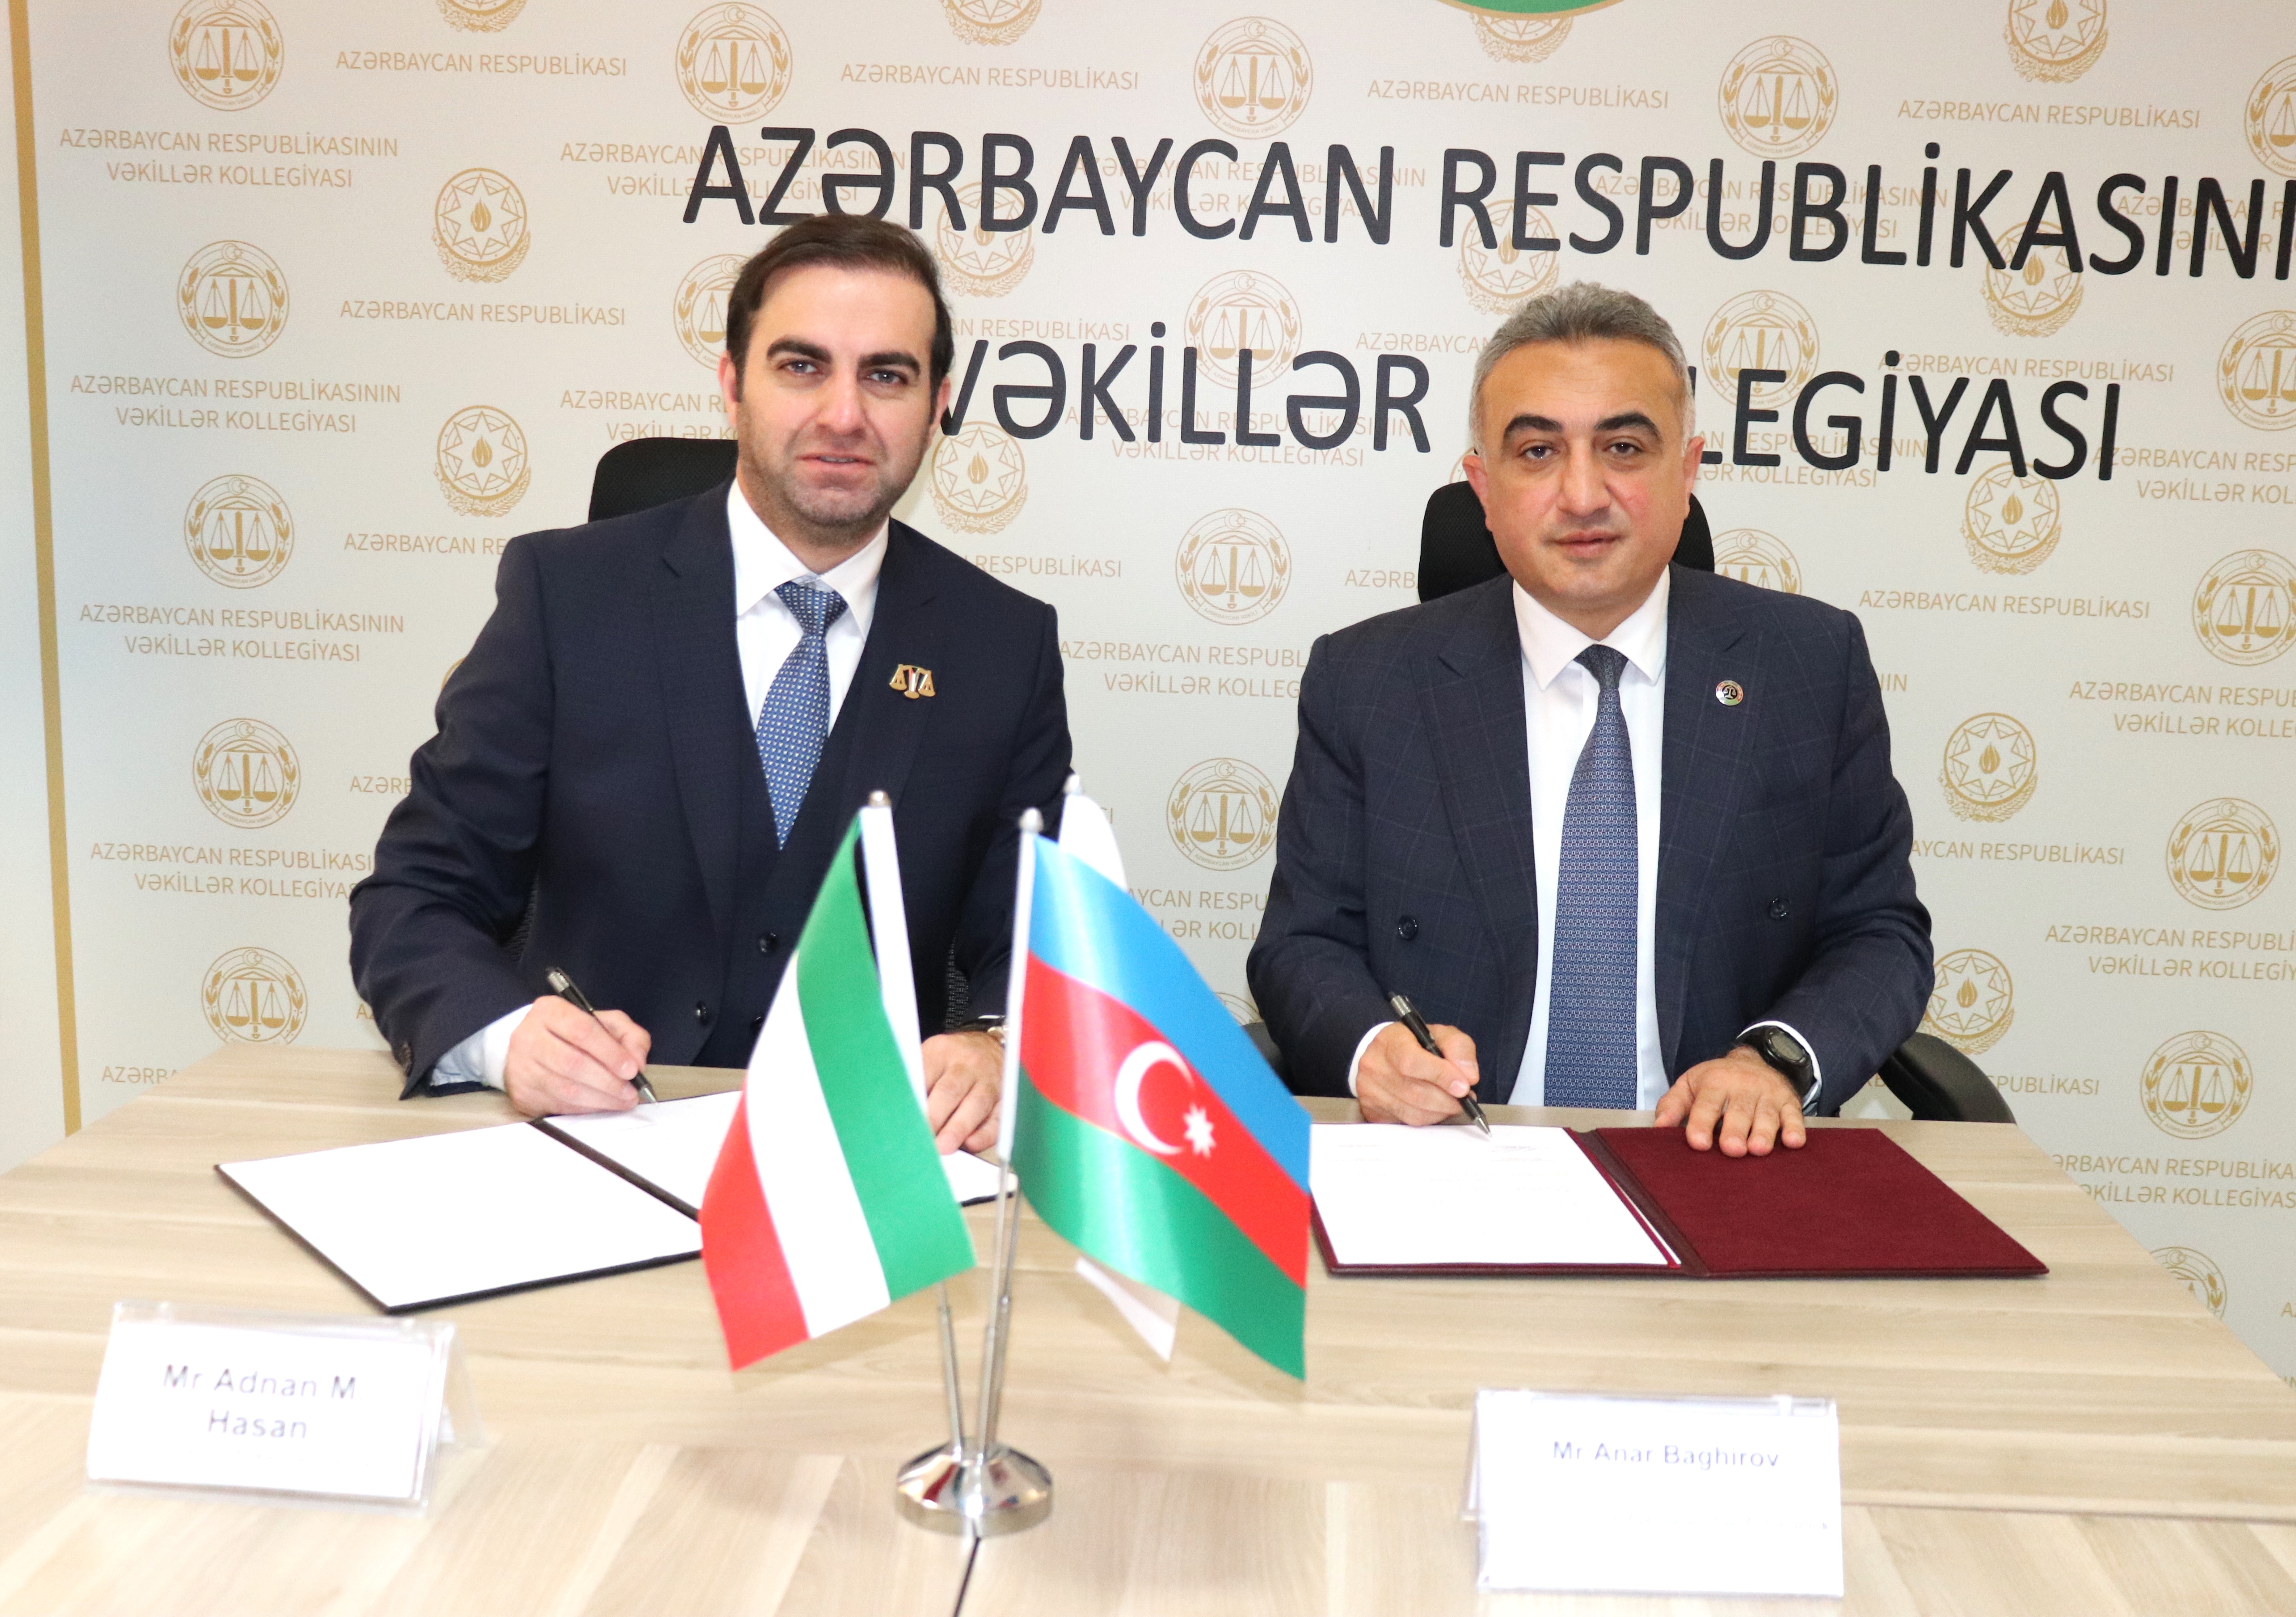 Azərbaycan və Küveyt vəkillər kollegiyaları arasında Memorandum imzalandı - FOTO